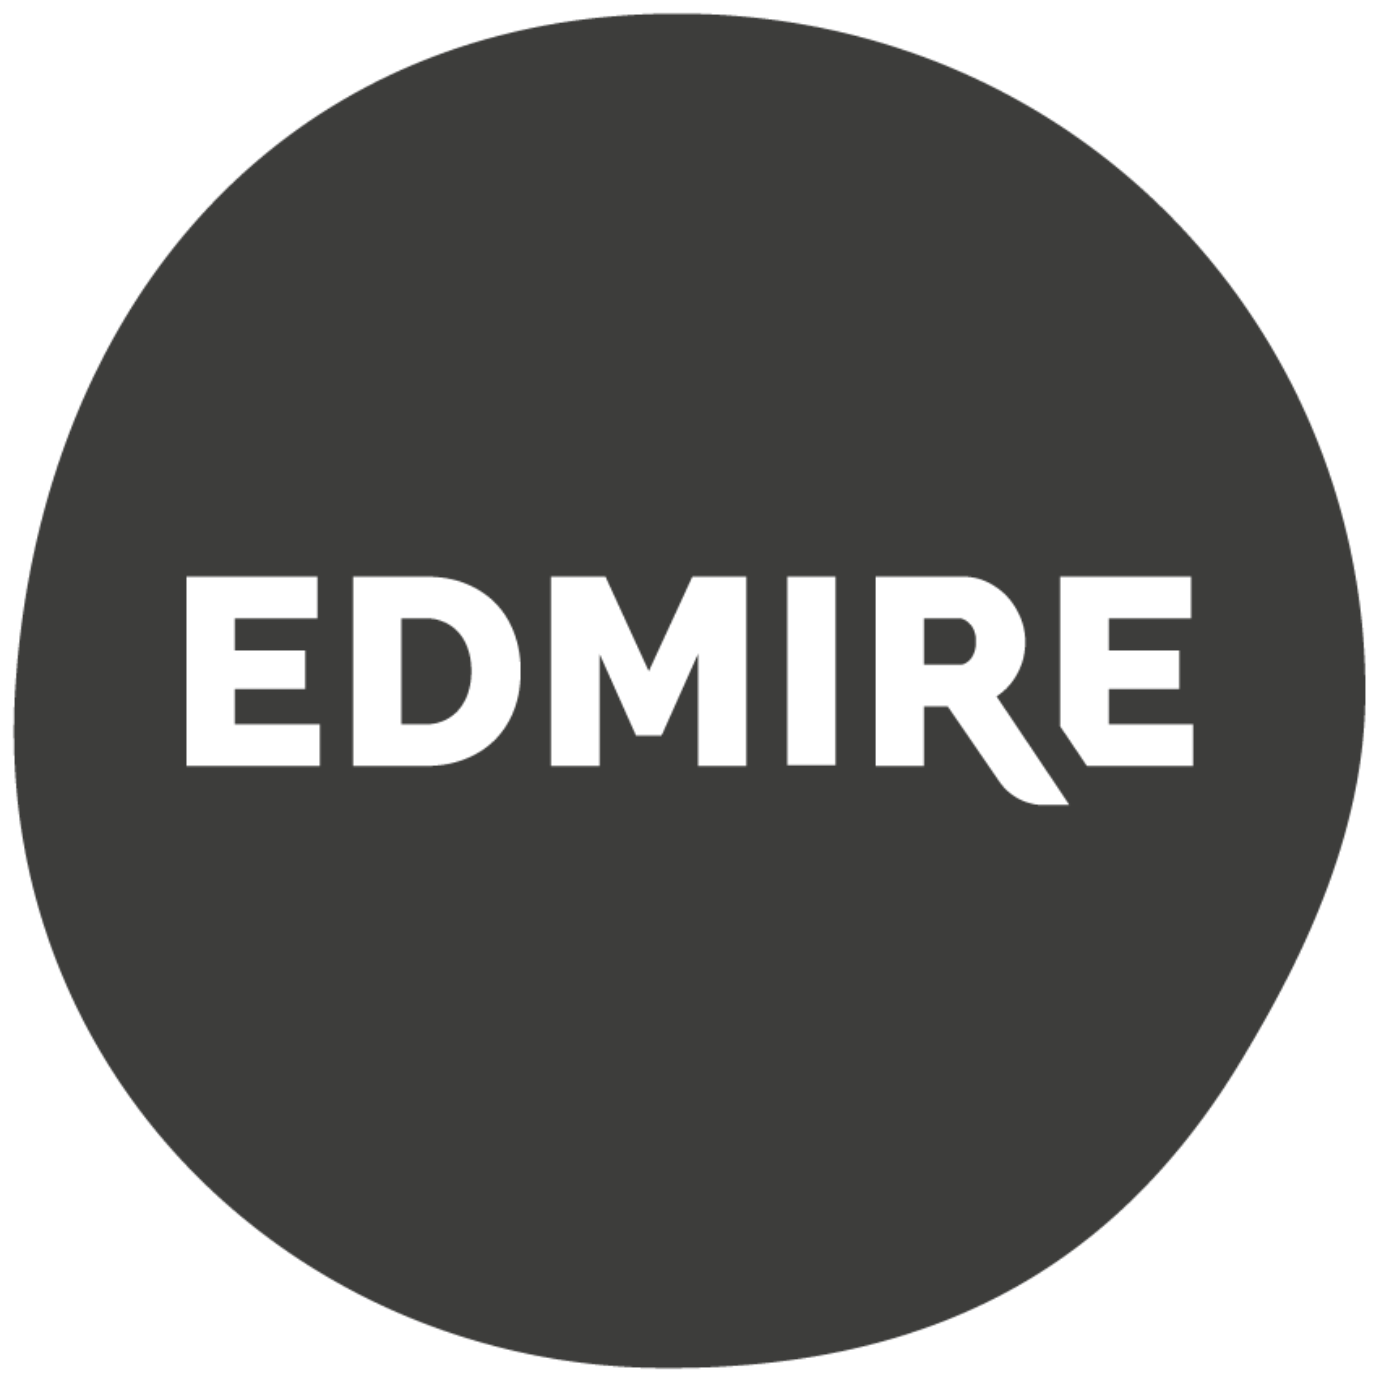 Edmire logo whitecopy12 3x